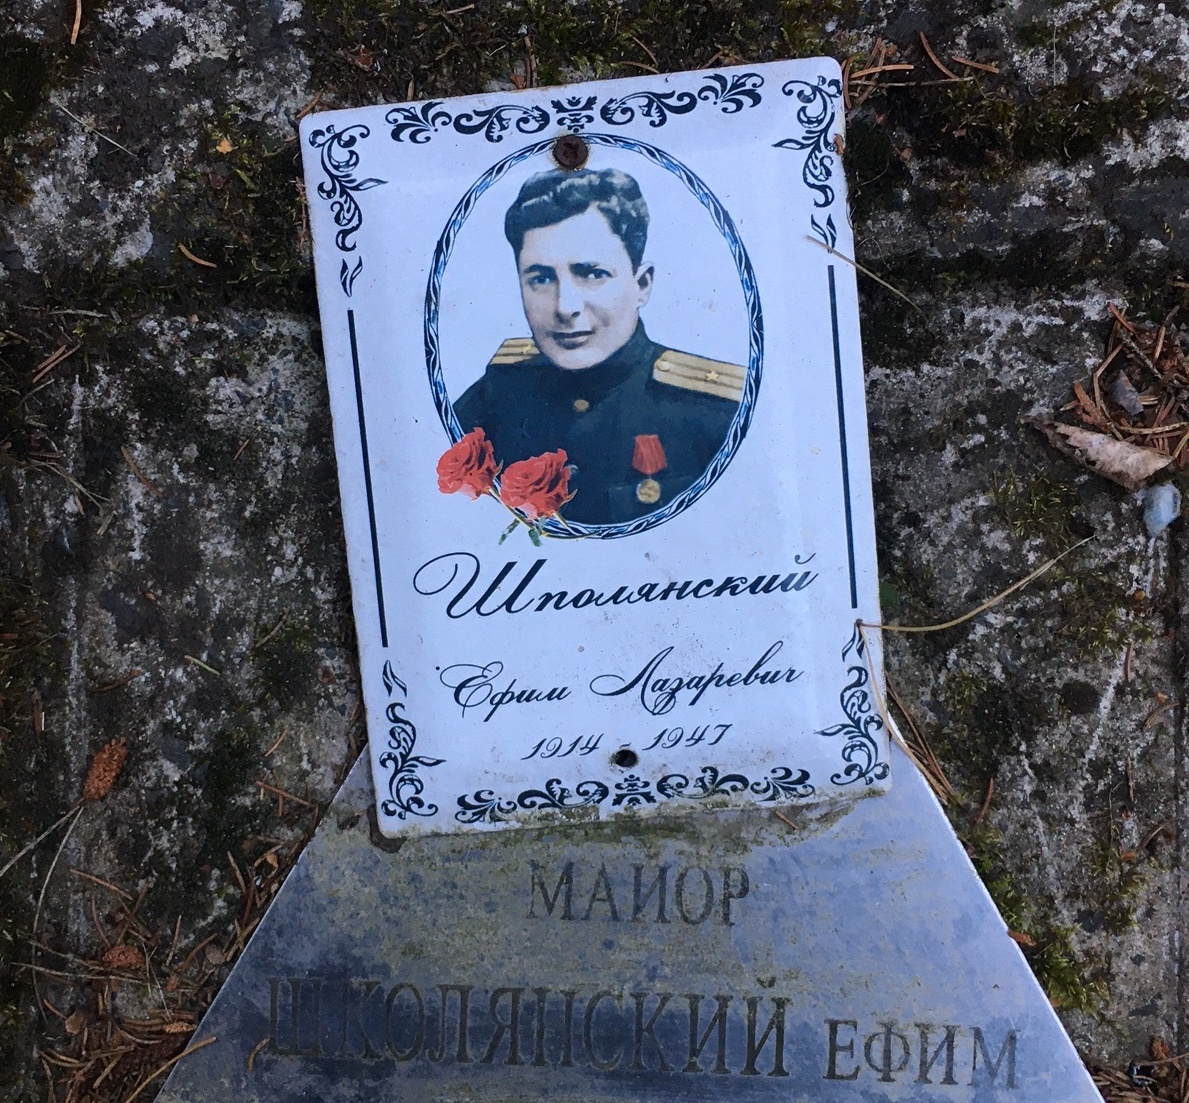 Cmentarz w Bornem Sulinowie. Fot. Agata Rokicka [Radio Szczecin]